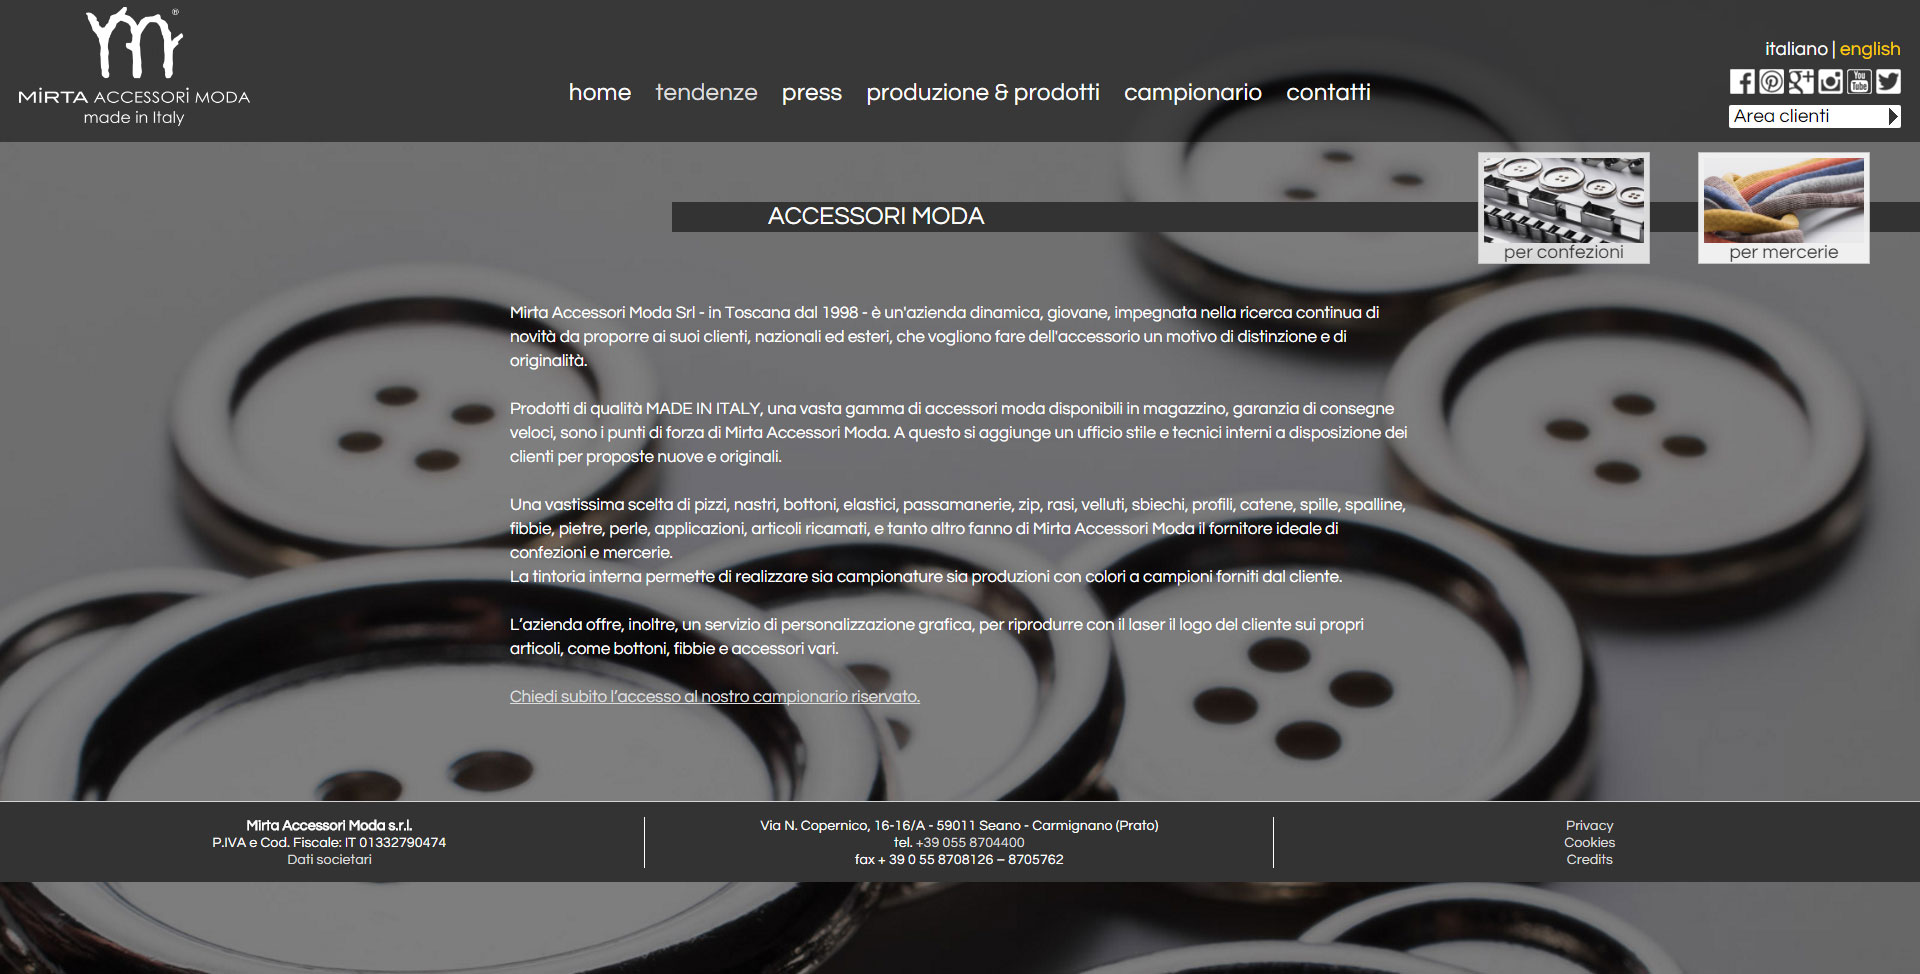 immagine home page del sito mirta accessori